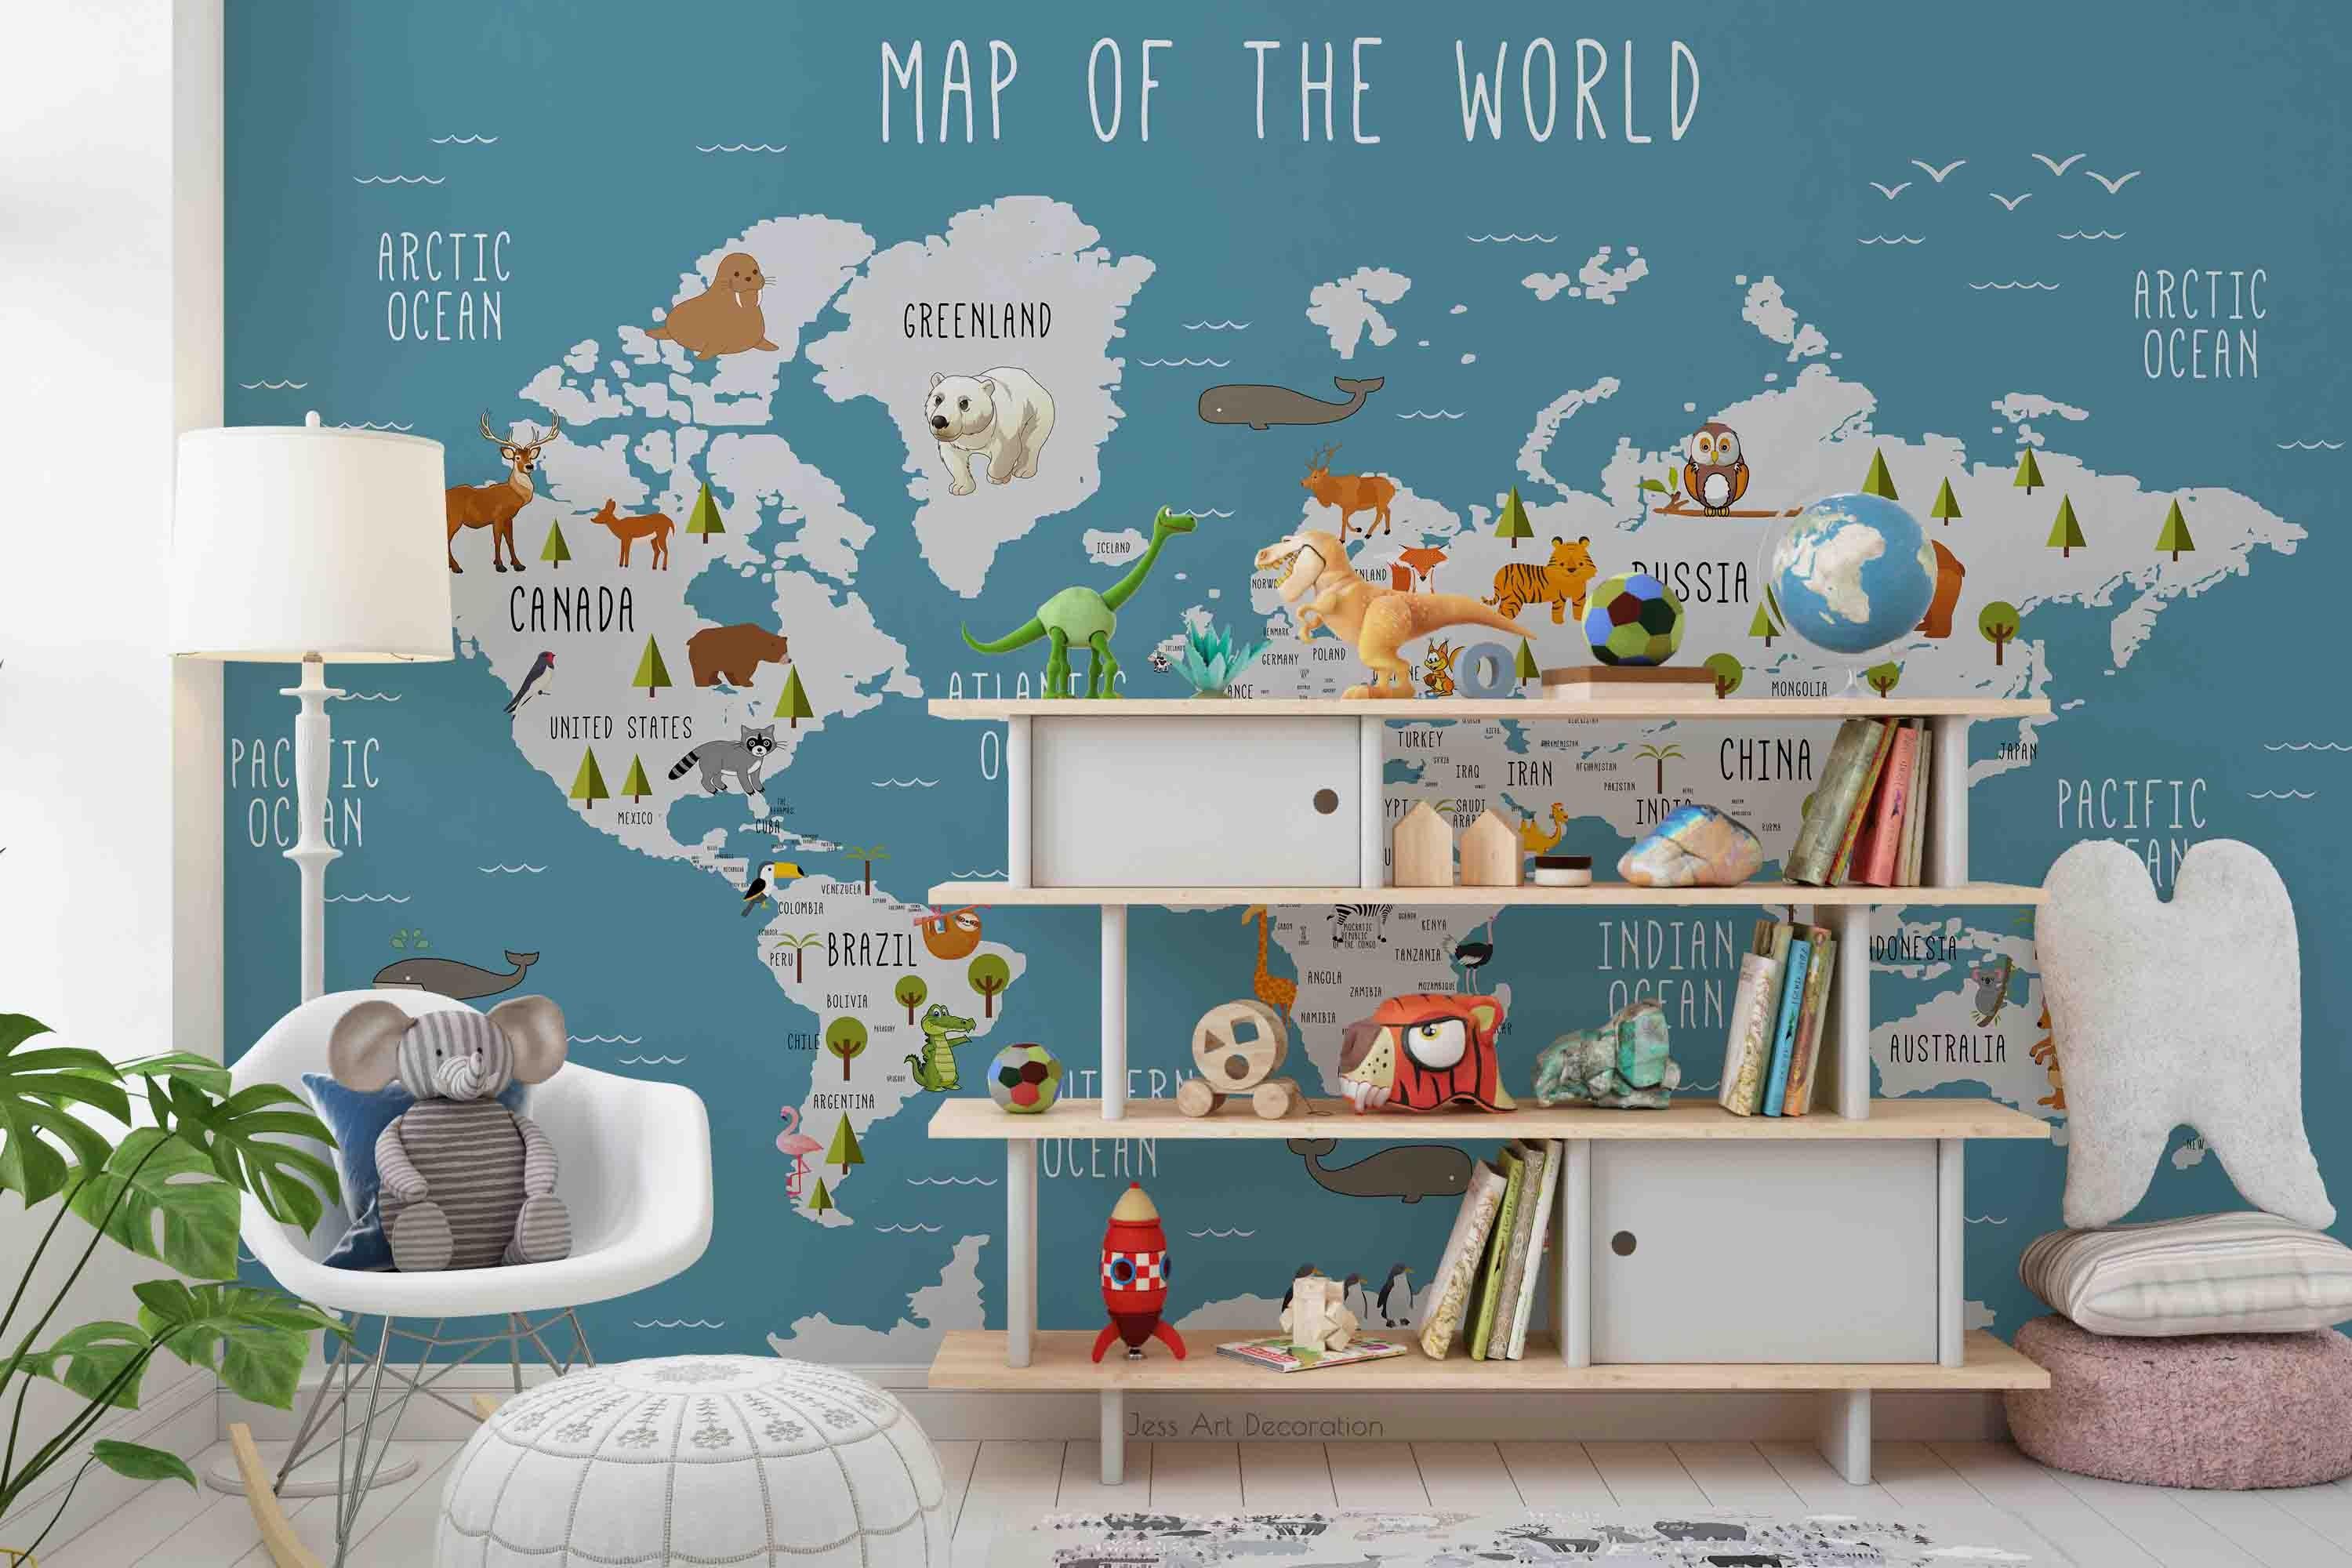 3D World Map Animal Wall Mural Wallpaper GD 2646- Jess Art Decoration